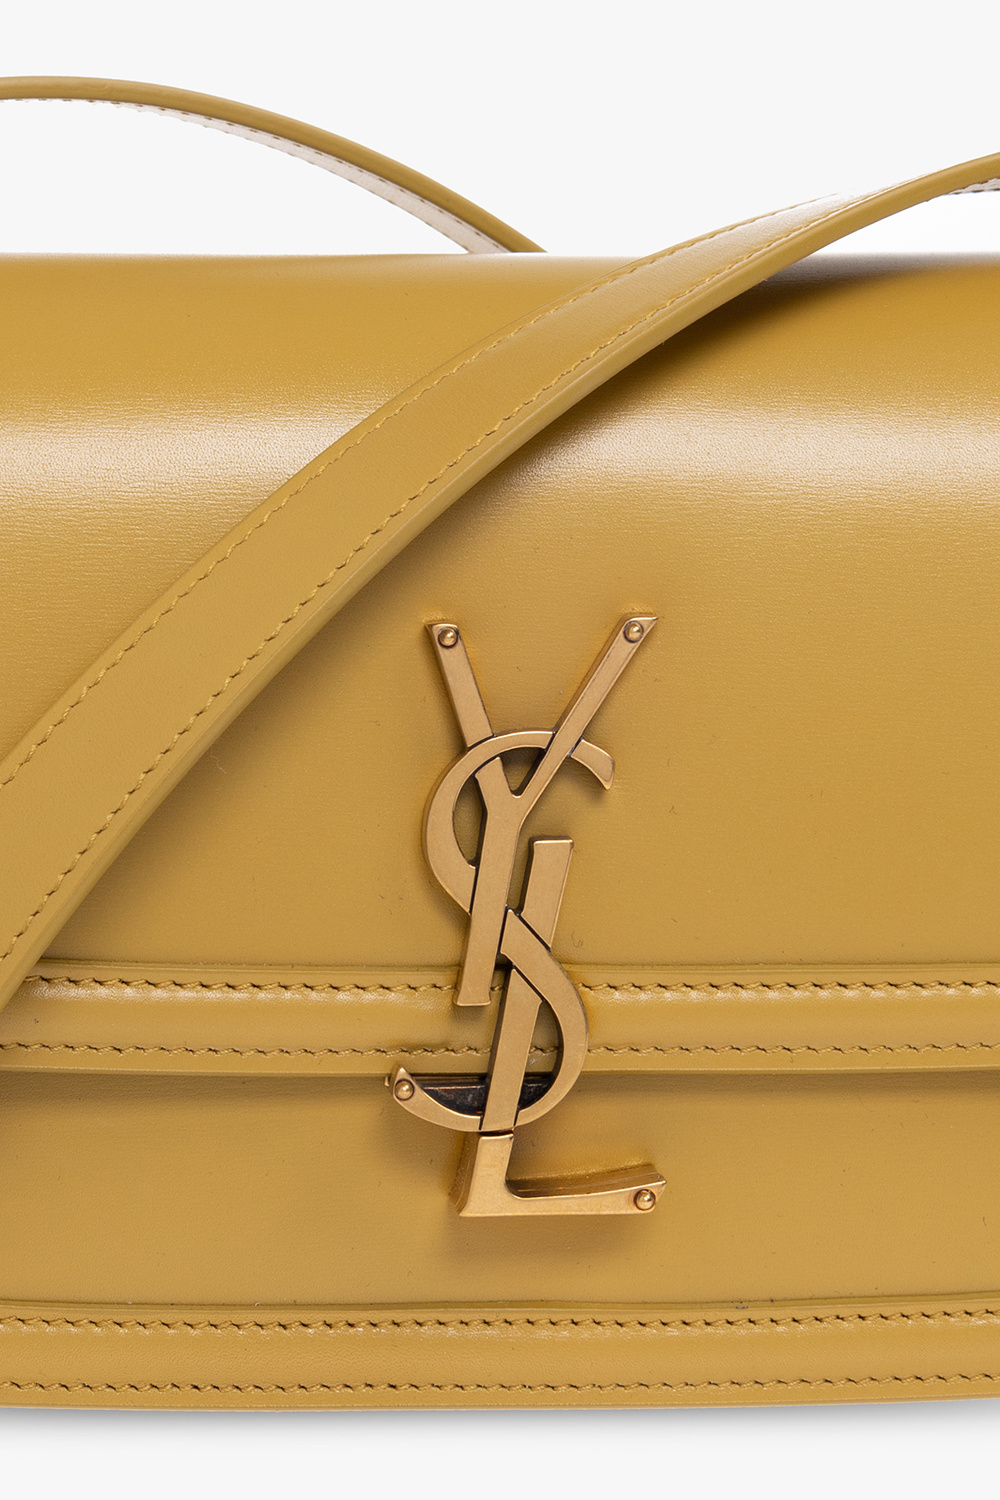 Louis Vuitton Monogram Confidential Square 70 - Vitkac shop online